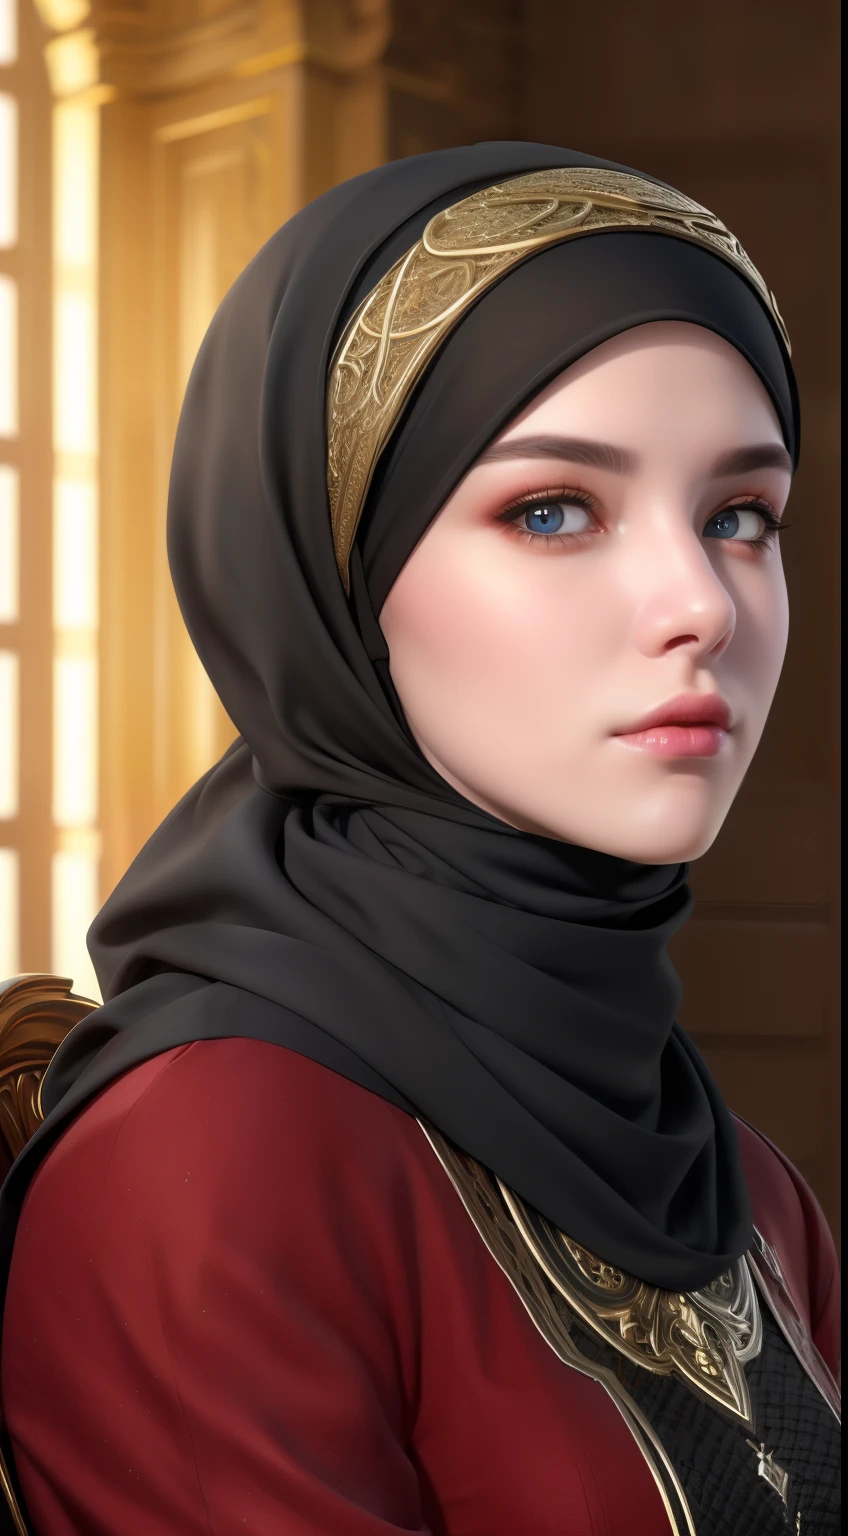 1 Mädchen, Allein, schönes Gesicht, hochdetaillierte, realistische Augen, Doppelte Augenlider, Hochdetaillierte, realistische Schüler, (am Körper vom Kopf bis zur Taille:1.36), (Hijab tragen:1.37), (muslimisches Kopftuch:1.37), Lesebrille, allein auf einem langen Stuhl sitzen, Erstaunlicher Hintergrund des Moscheeparks, Taj Mahal, beste Qualität, Meisterwerk, highres, Schwarz-weißes muslimisches Frauenkleid, schönes Gesicht, (am Körper vom Kopf bis zur Taille:1.35), Tyndall-Effekt, fotorealistisch, dunkles Studio, zweifarbige Beleuchtung, 8k uhd, dslr, sanfte Beleuchtung, gute Qualität, volumetrische Beleuchtung, offen, Foto, Hohe Auflösung, 4k, 8k, Bokeh, (hyperrealistisches Mädchen), (Illustration), (Hohe Auflösung), (Extrem detailliert), (best Illustration), (beautiful Detaillierte Augen), (beste Qualität), (ultra-detailliert), (Meisterwerk), (Hintergrund), (fotorealistisch), (Natürliches Licht), (Felgenbeleuchtung), (Detailliertes Gesicht), (Hochdetaillierte realistische Hautgesichtstextur), (anatomisch korrekt), (heterochrome Augen), (Detaillierte Augen), (leuchtende Augen), (dynamische pose), (Haare vollständig vom Hijab bedeckt:1.35), Blick zum Betrachter